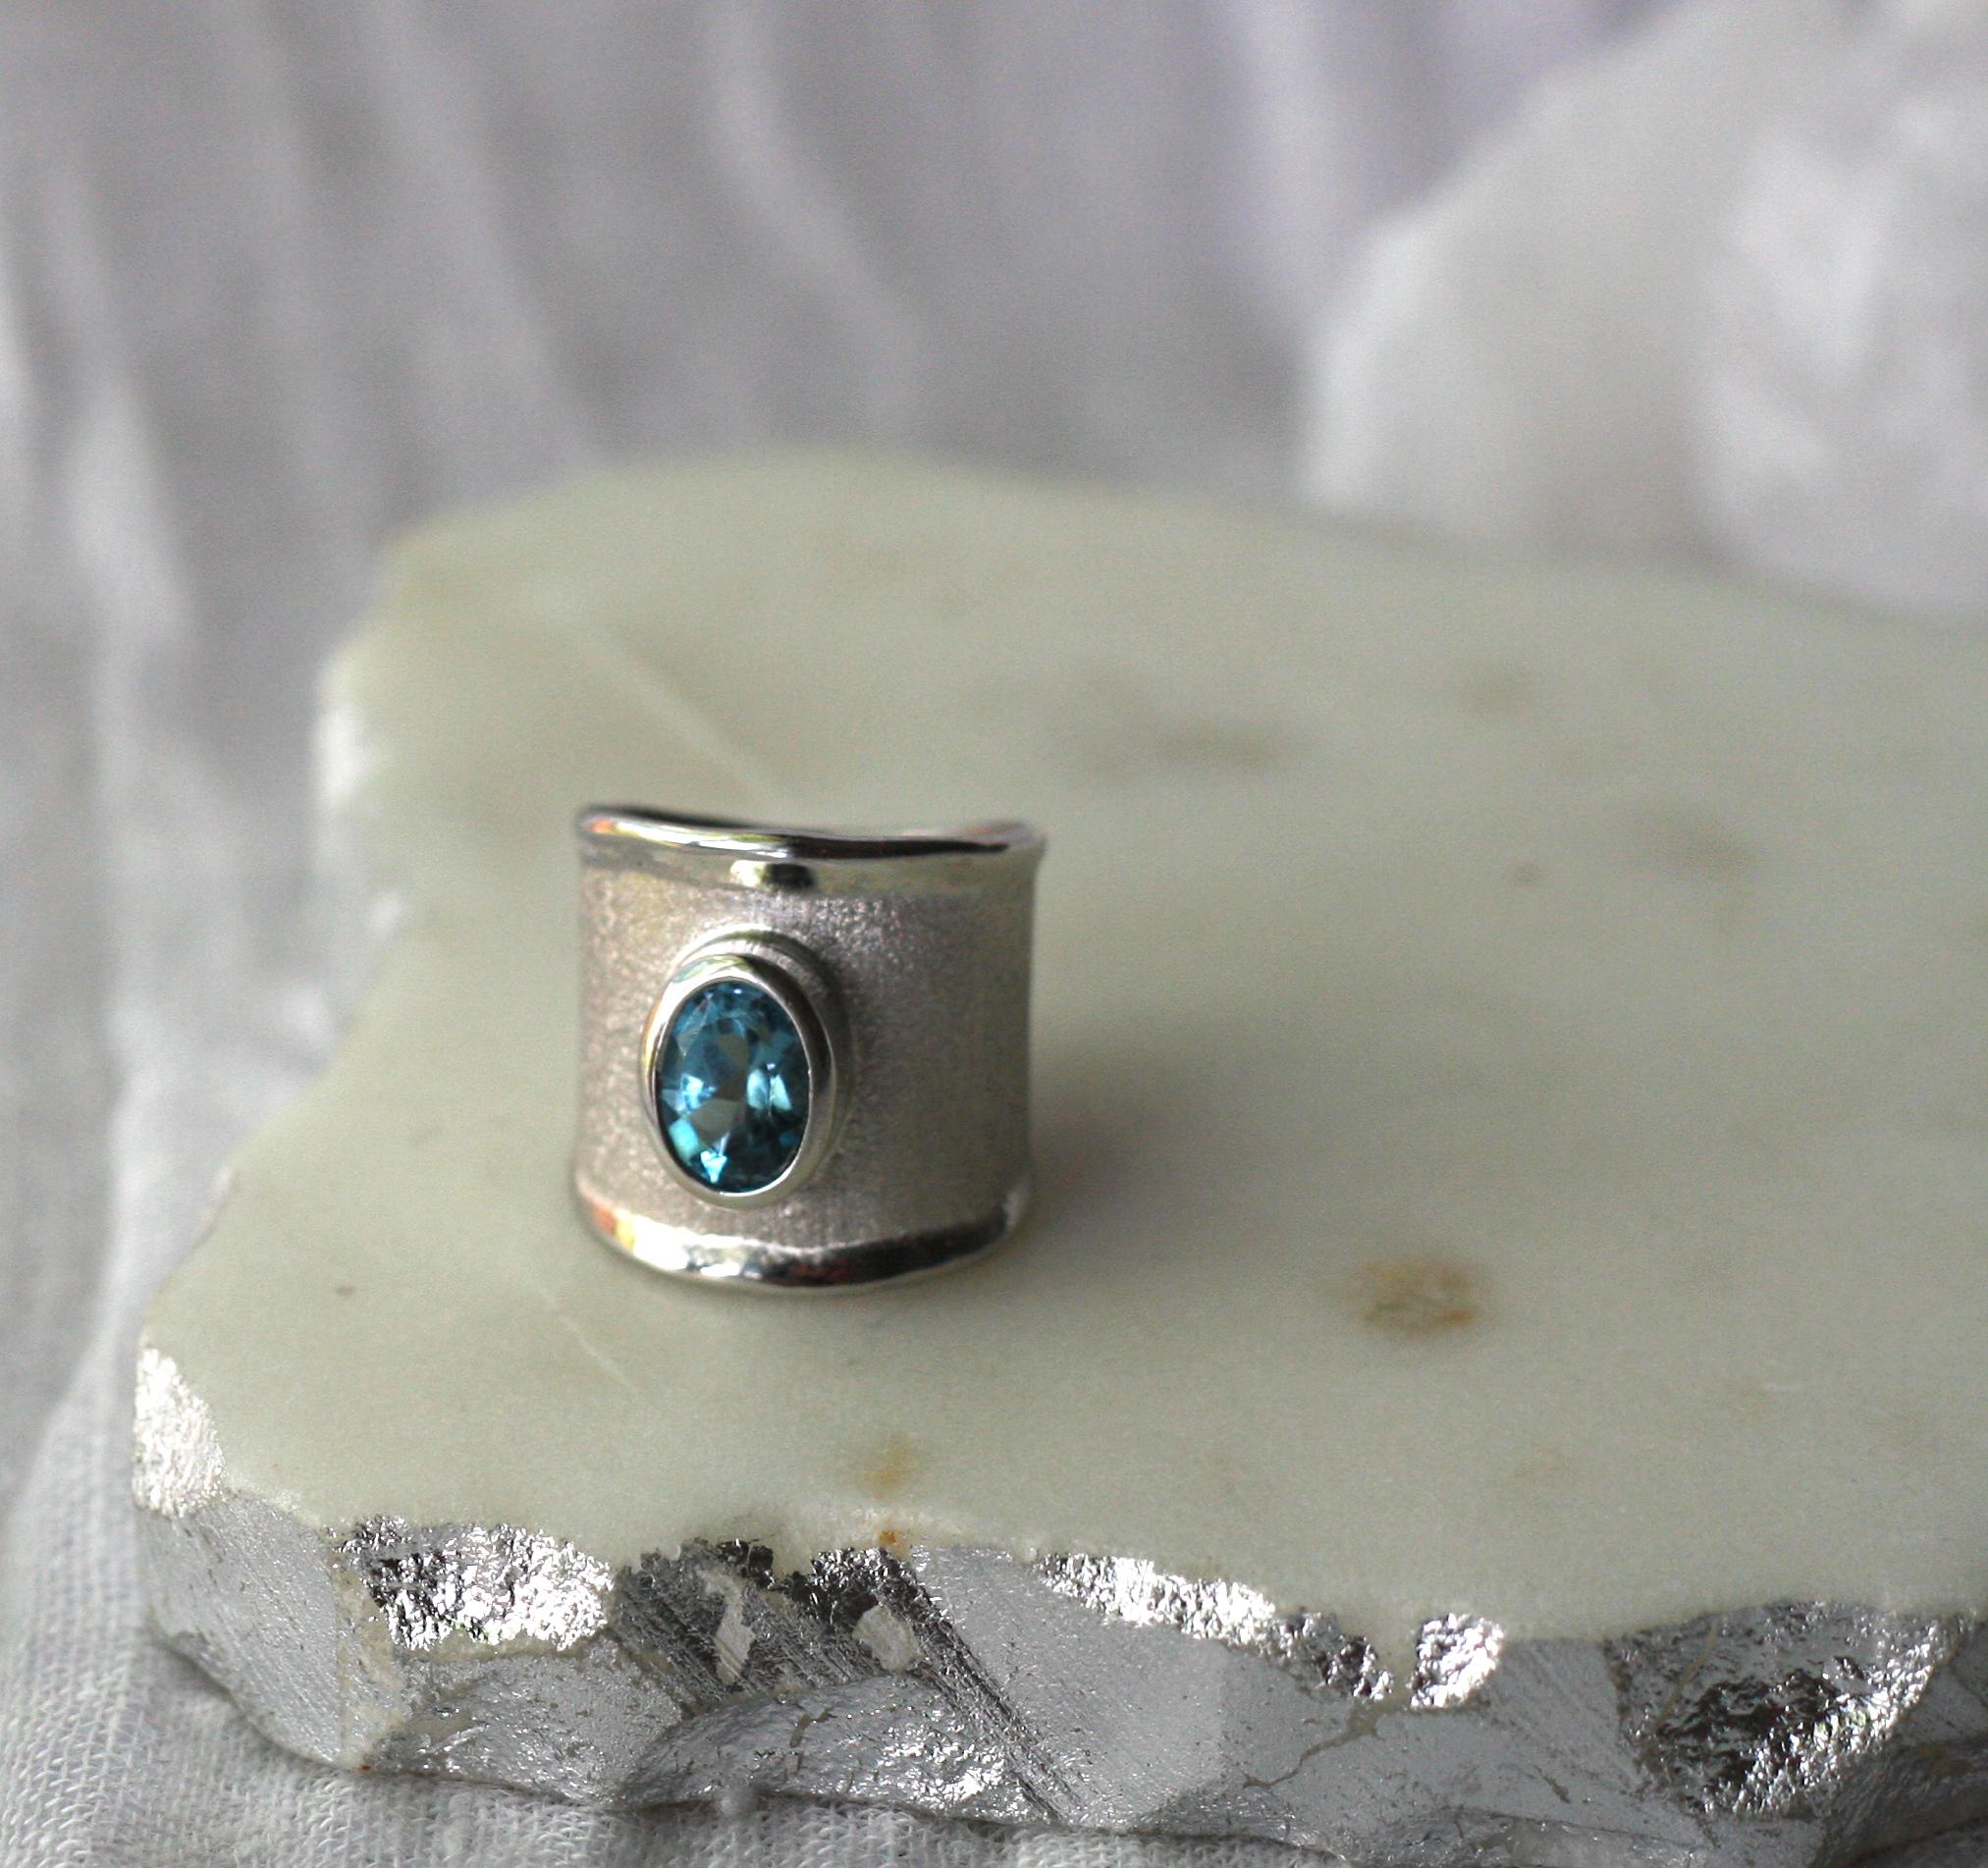 Dies ist Yianni Creations Ring von Ammos Collection 100% handgefertigt aus Feinsilber und mit Palladium beschichtet, um anlaufen zu widerstehen. Dieser Ring mit 2,50 Karat Londoner Blautopas wird durch einzigartige Handwerkstechniken ergänzt -